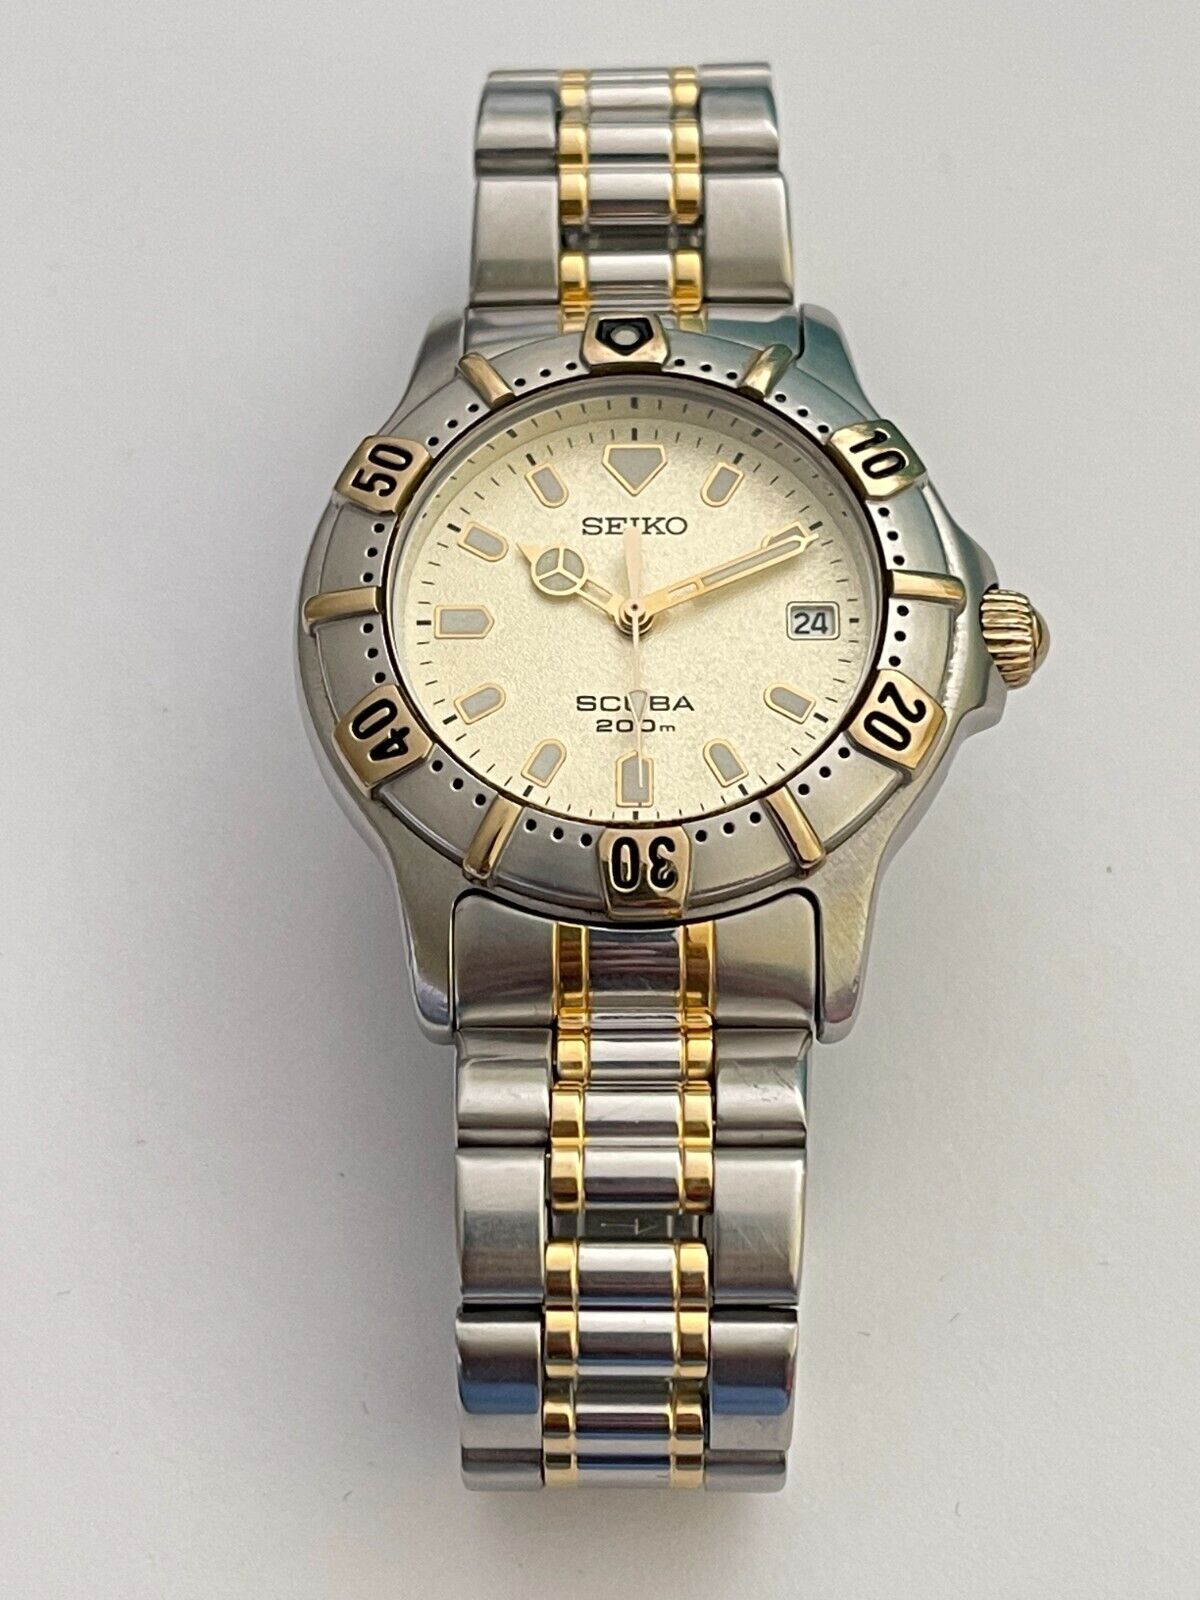 Vintage Seiko 7N35-6010 Watch Seiko SCUBA 200 M Air Diver's Watch 